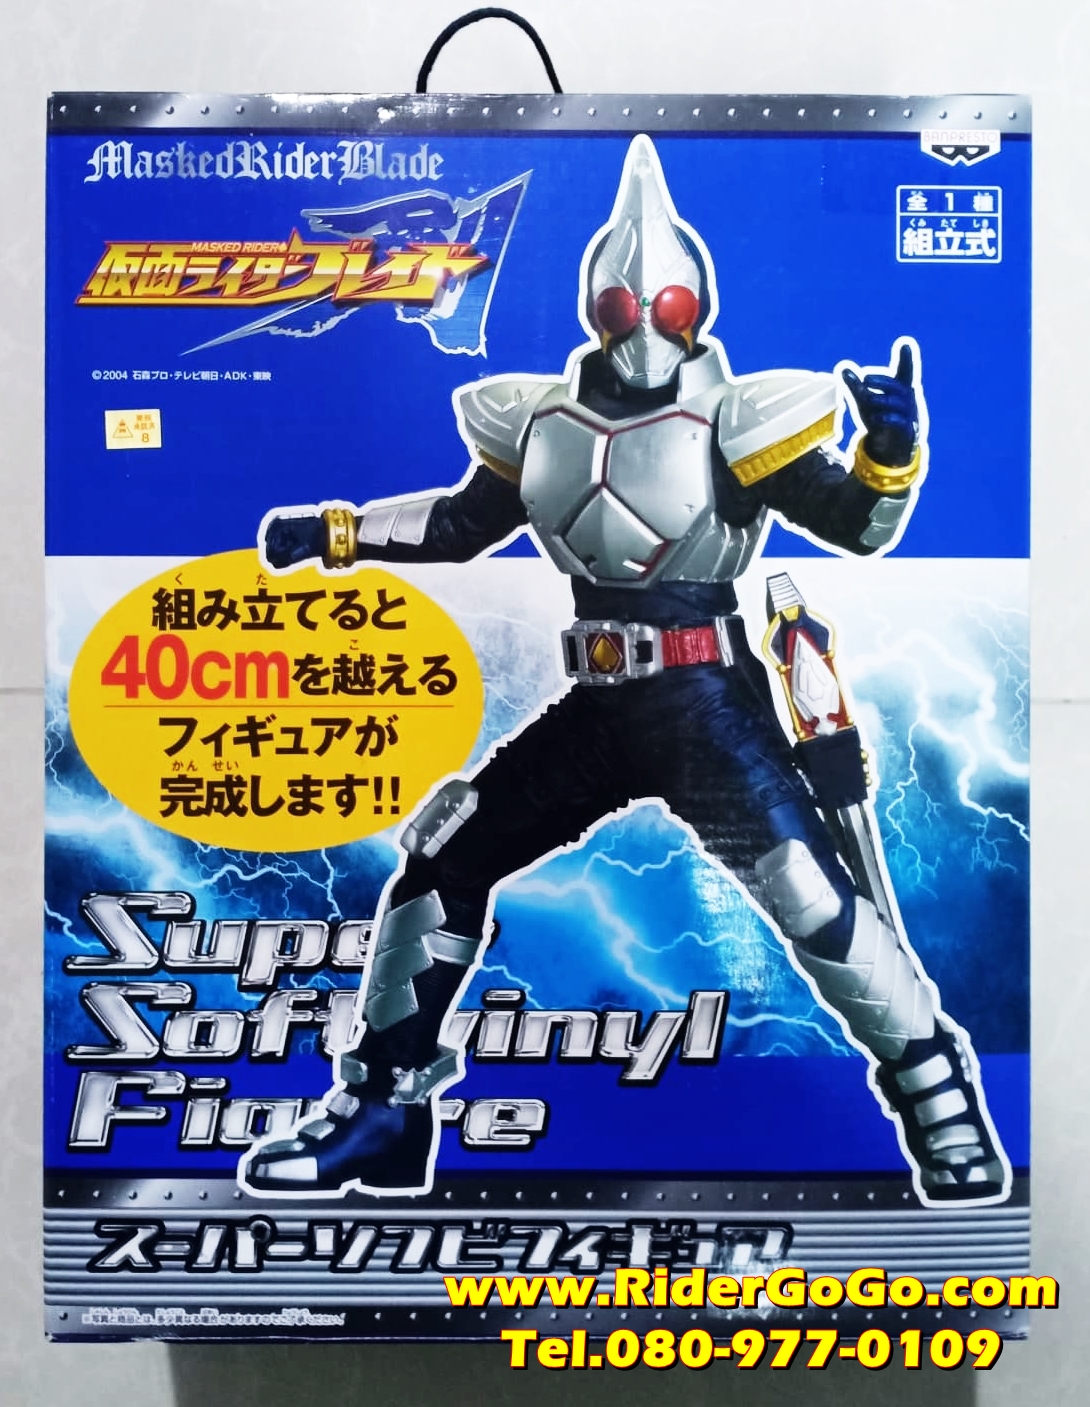 โมเดลตัวซอฟมาสค์ไรเดอร์เบลด Masked Rider Blade (Super Soft Vinyl Figure) ของใหม่ของแท้จากญี่ปุ่น รูปที่ 1